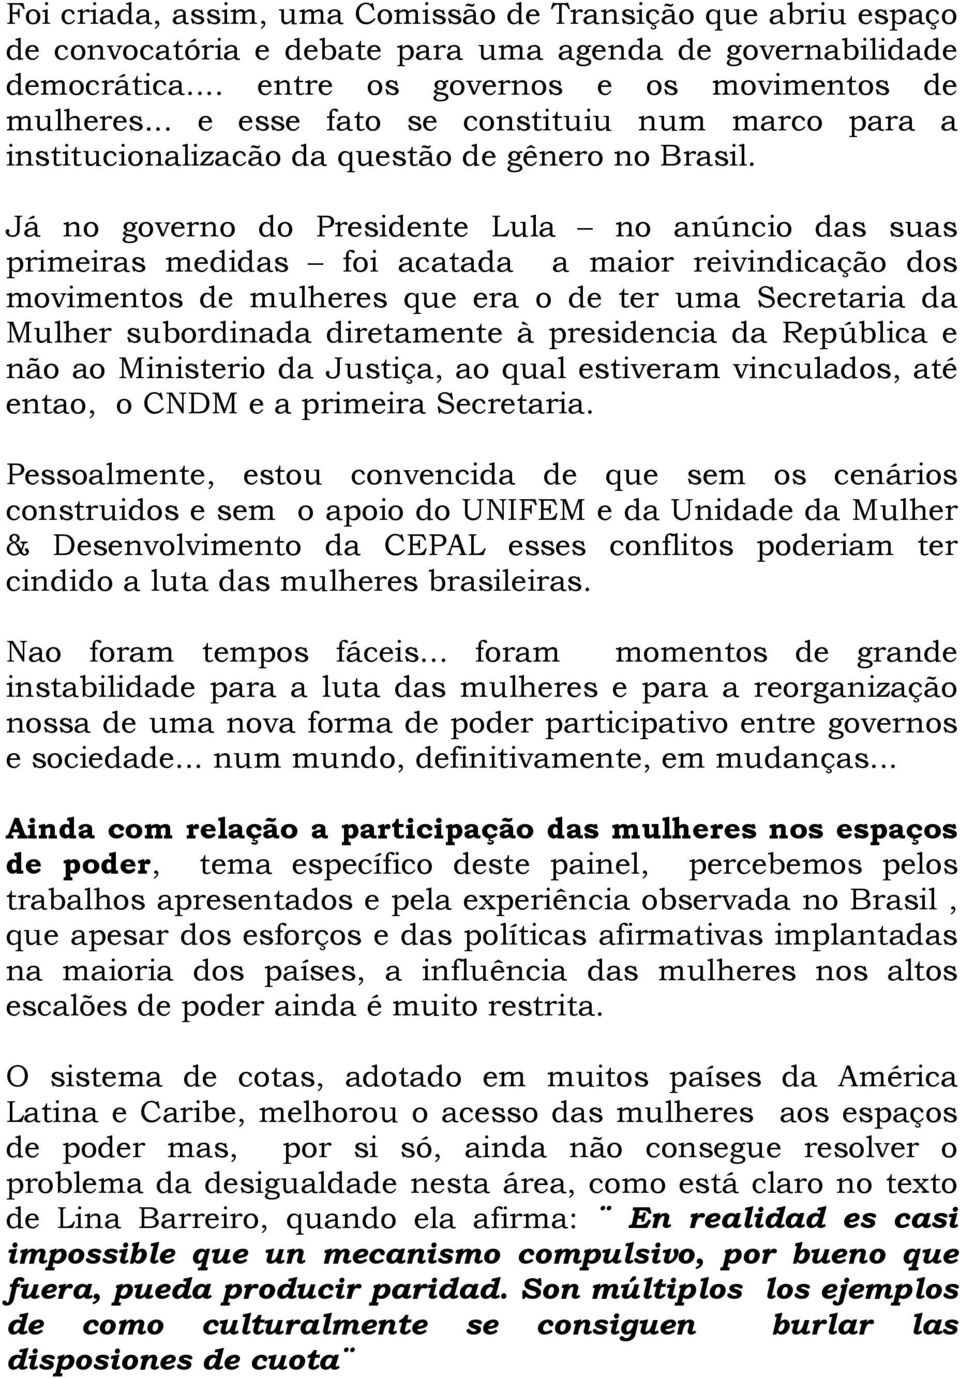 Já no governo do Presidente Lula no anúncio das suas primeiras medidas foi acatada a maior reivindicação dos movimentos de mulheres que era o de ter uma Secretaria da Mulher subordinada diretamente à